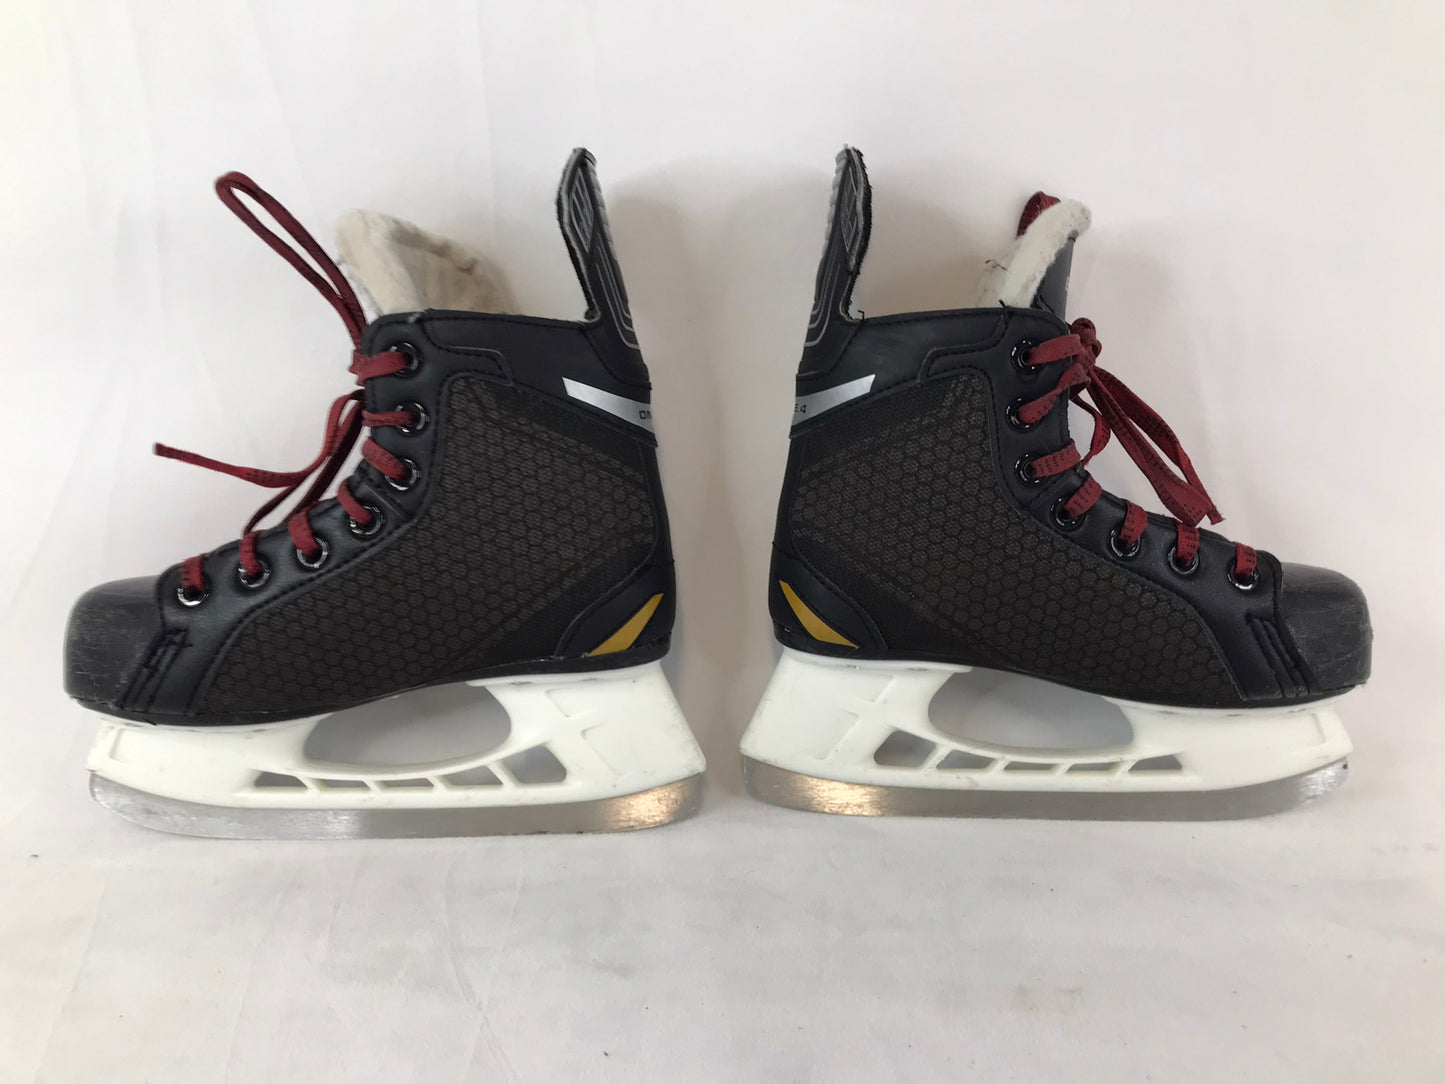 Hockey Skates Child Size 1 Shoe Size Bauer One.4